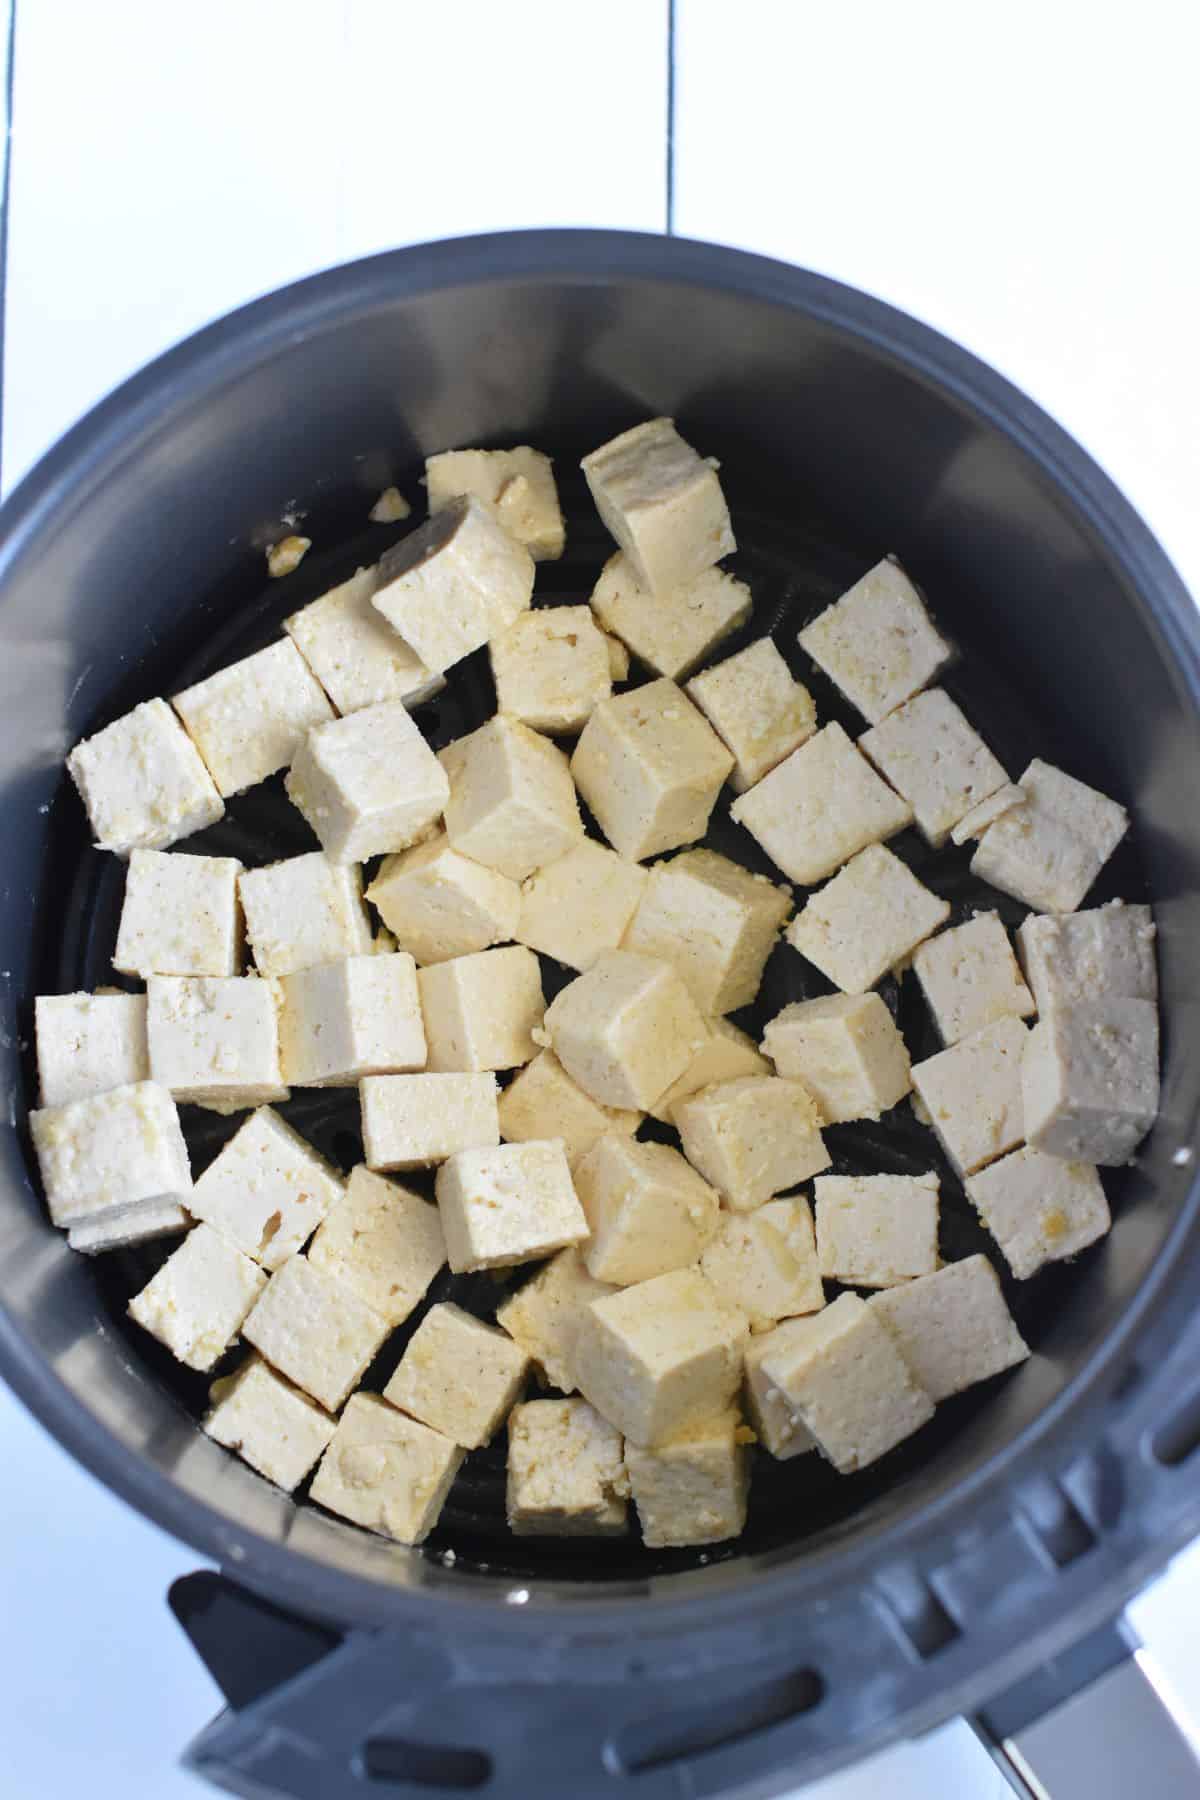 Cubes of tofu in air fryer basket.